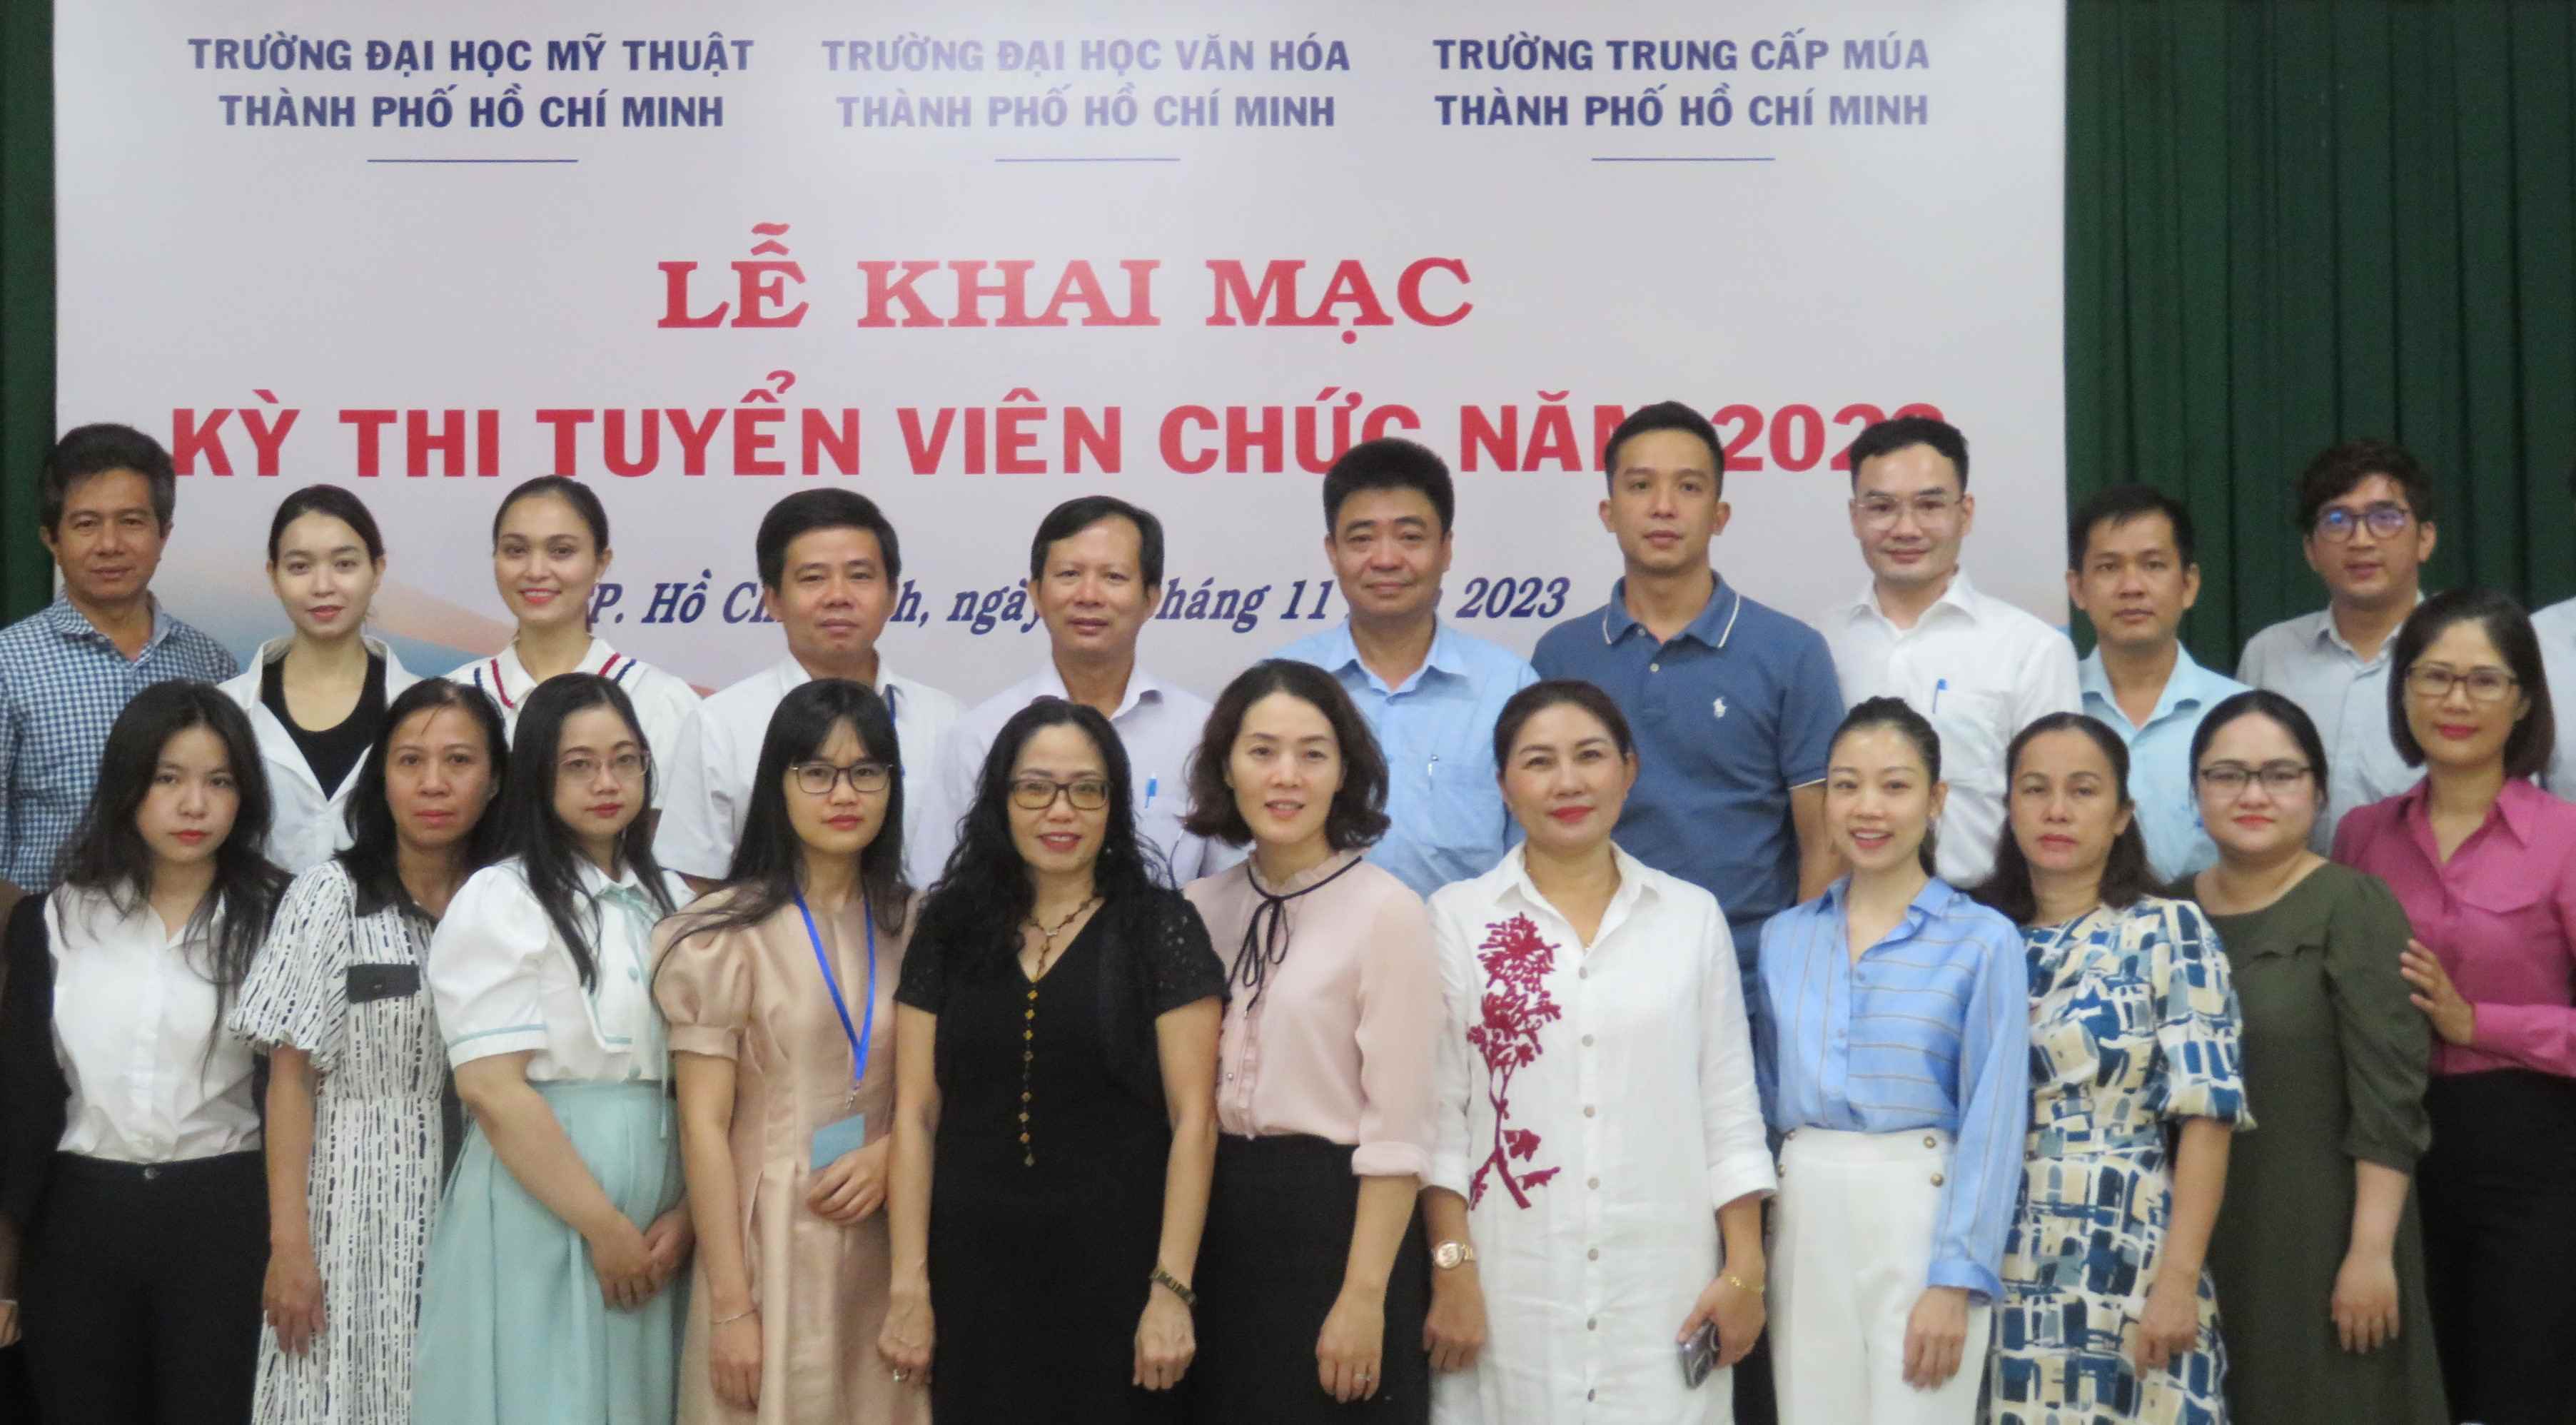 bet365 mobile bet
. Hồ Chí Minh tổ chức Lễ khai mạc kỳ thi tuyển dụng viên chức năm 2023